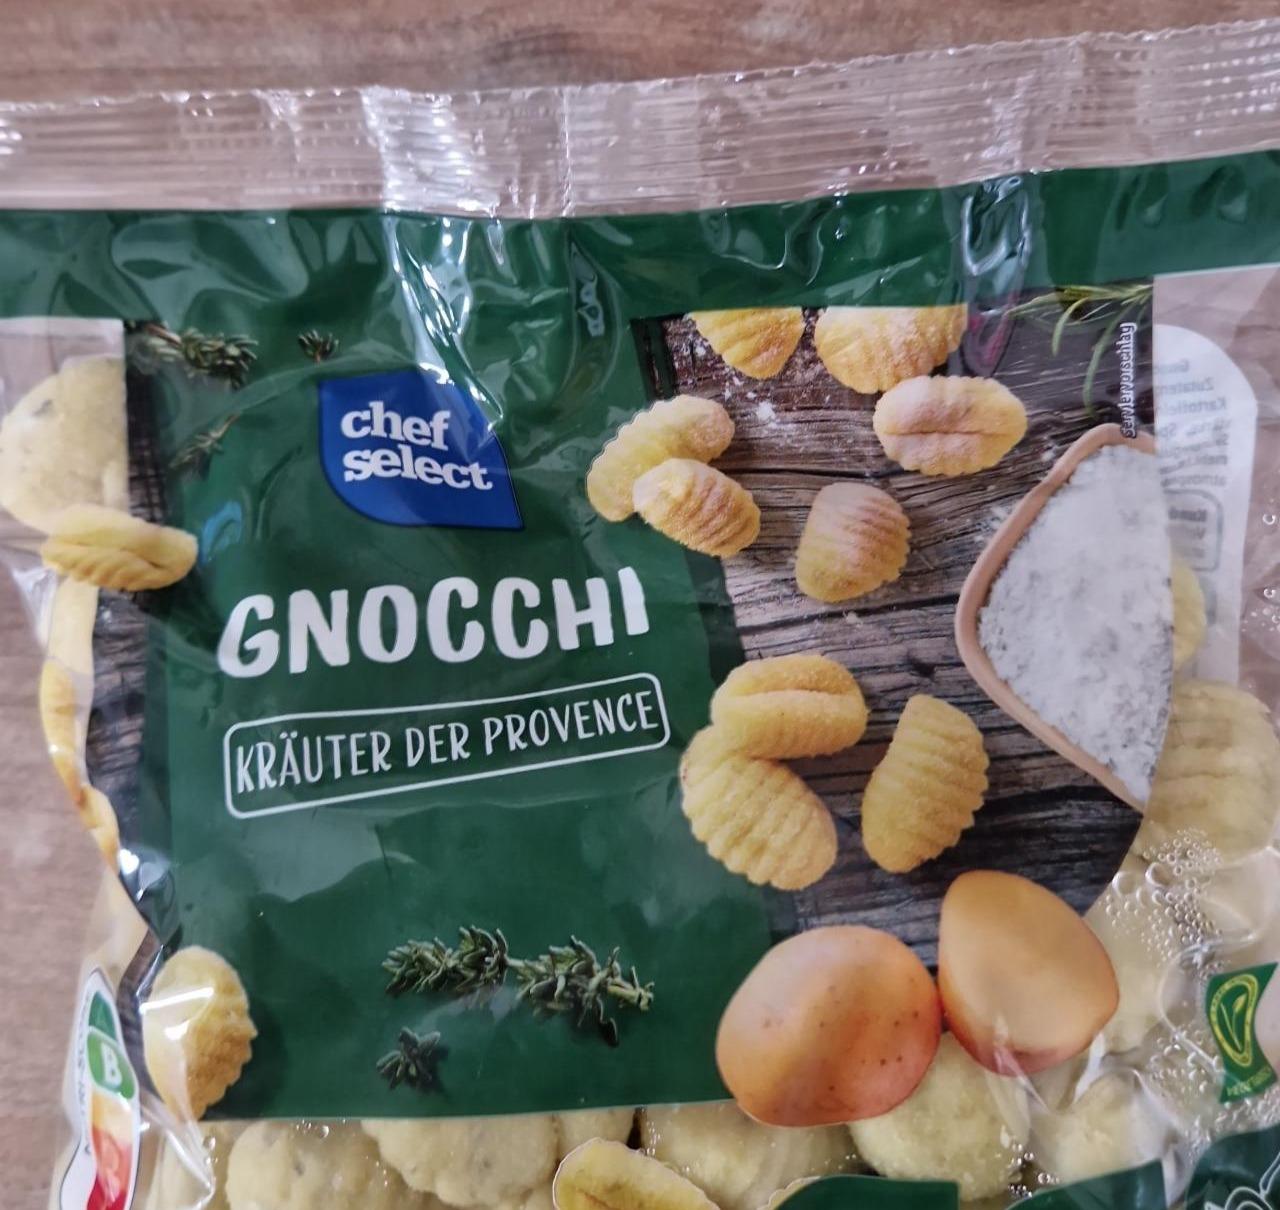 der Kräuter Chef nutriční hodnoty Gnocchi kJ Select Provence kalorie, - a